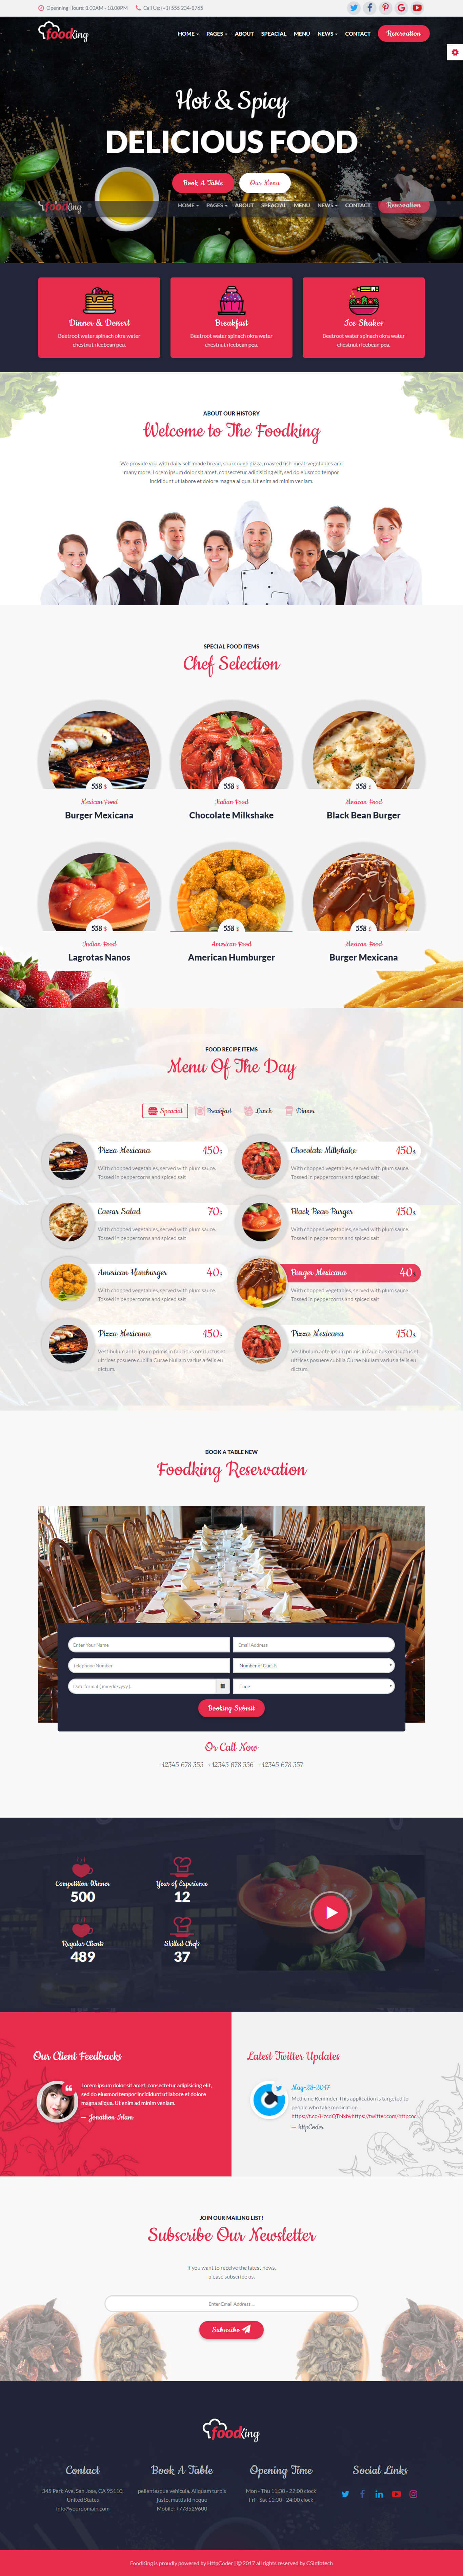 thiết kế website nhà hàng foodking